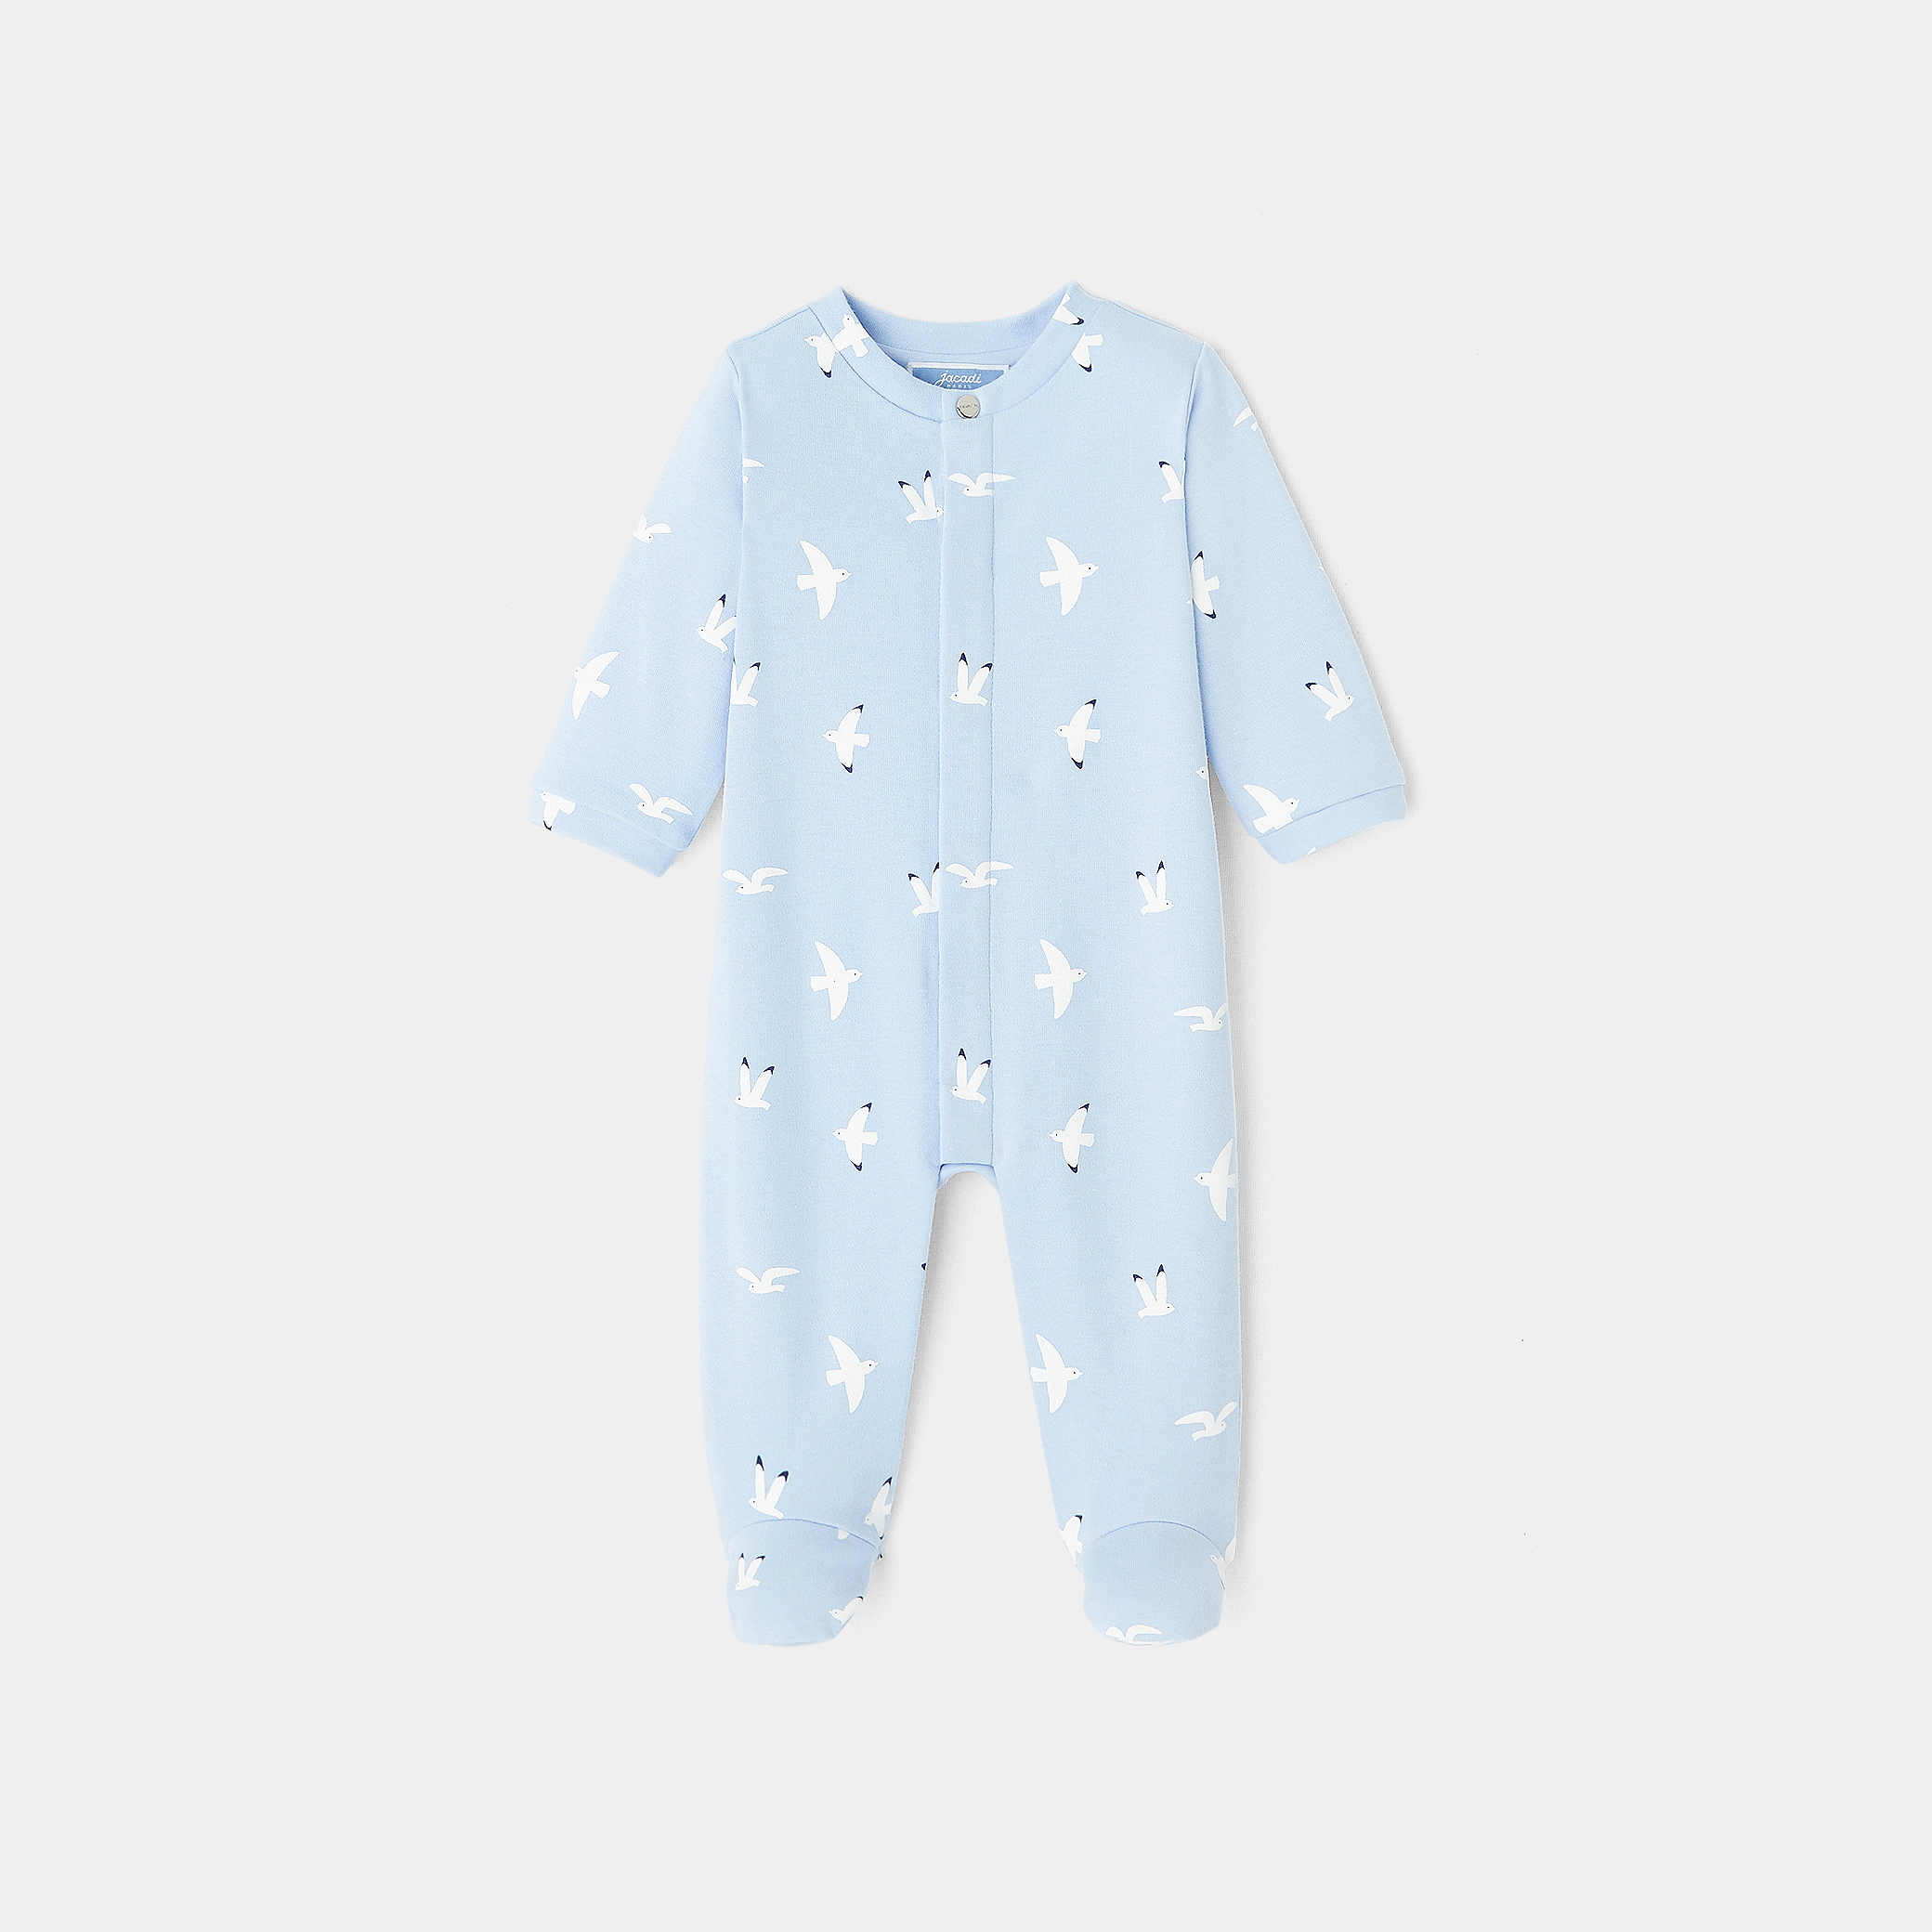 Baby boy cotton pajamas